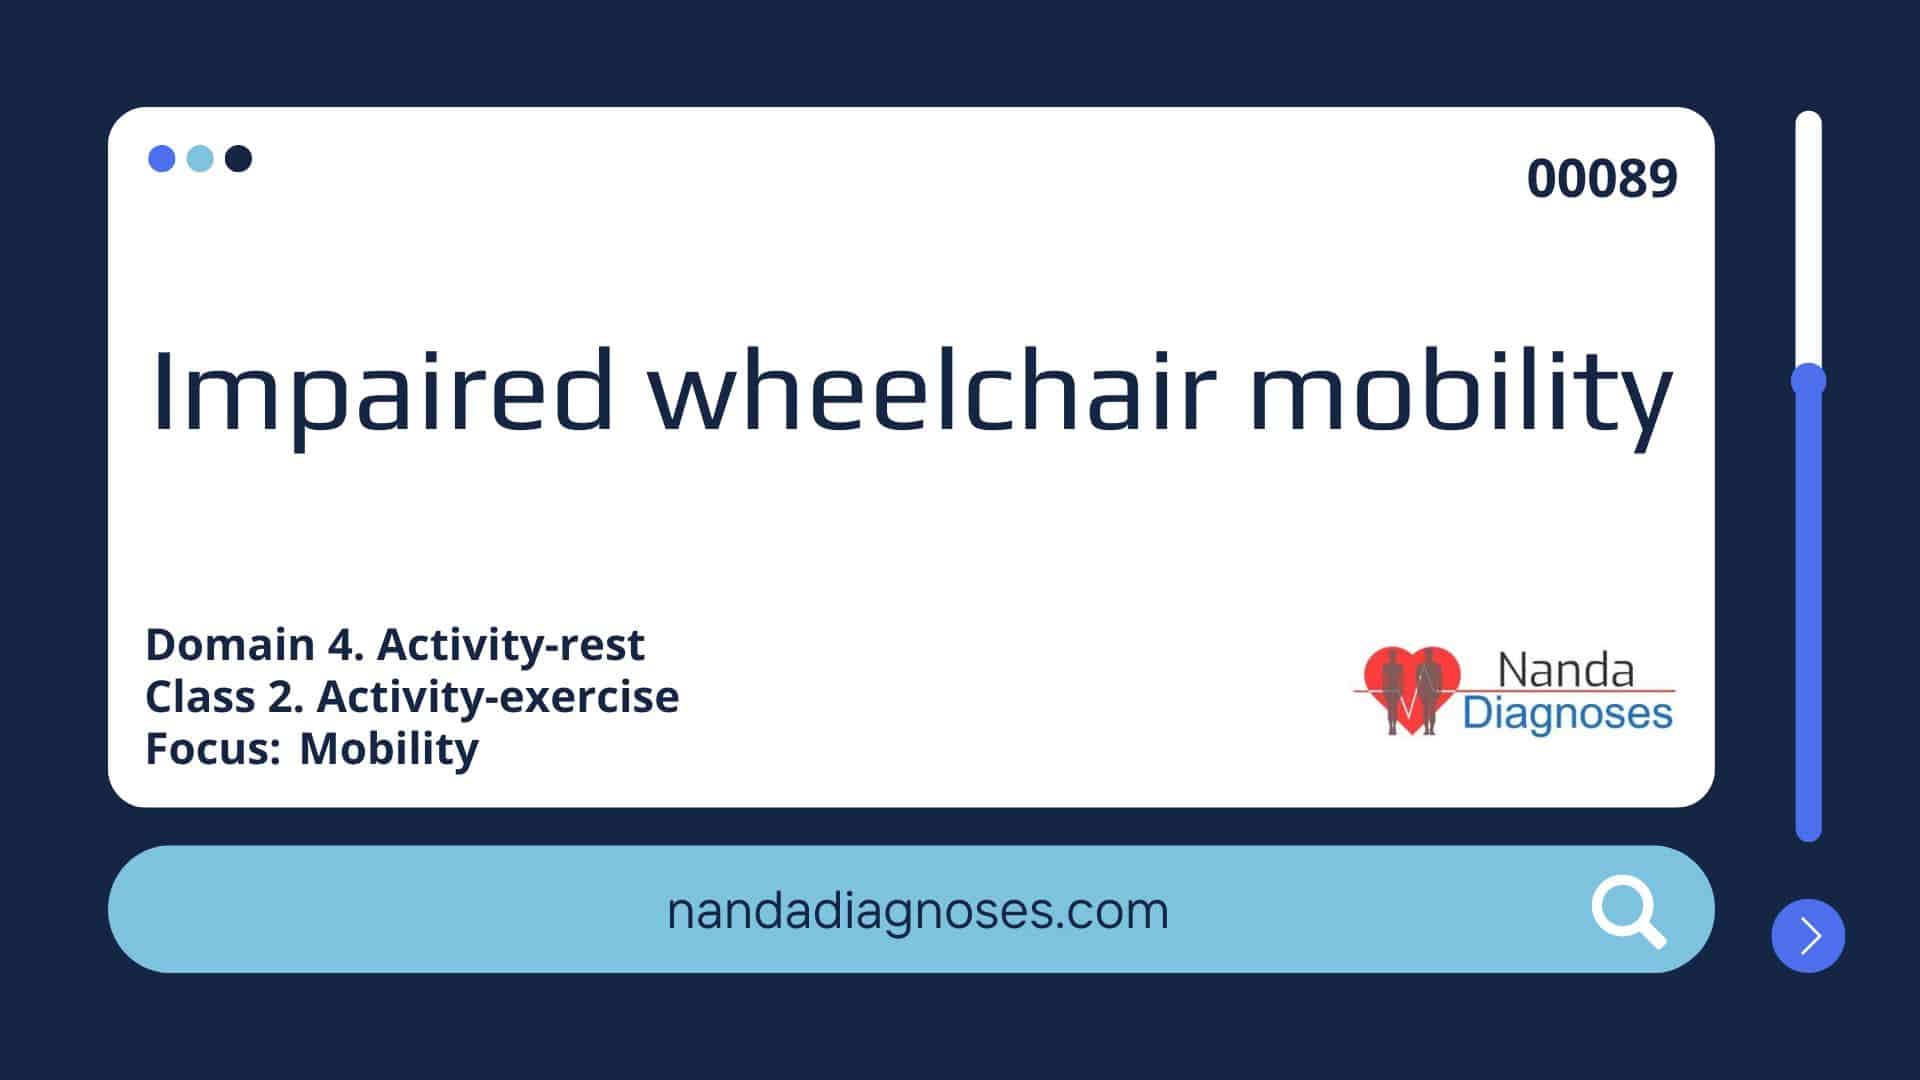 Nursing diagnosis Impaired wheelchair mobility